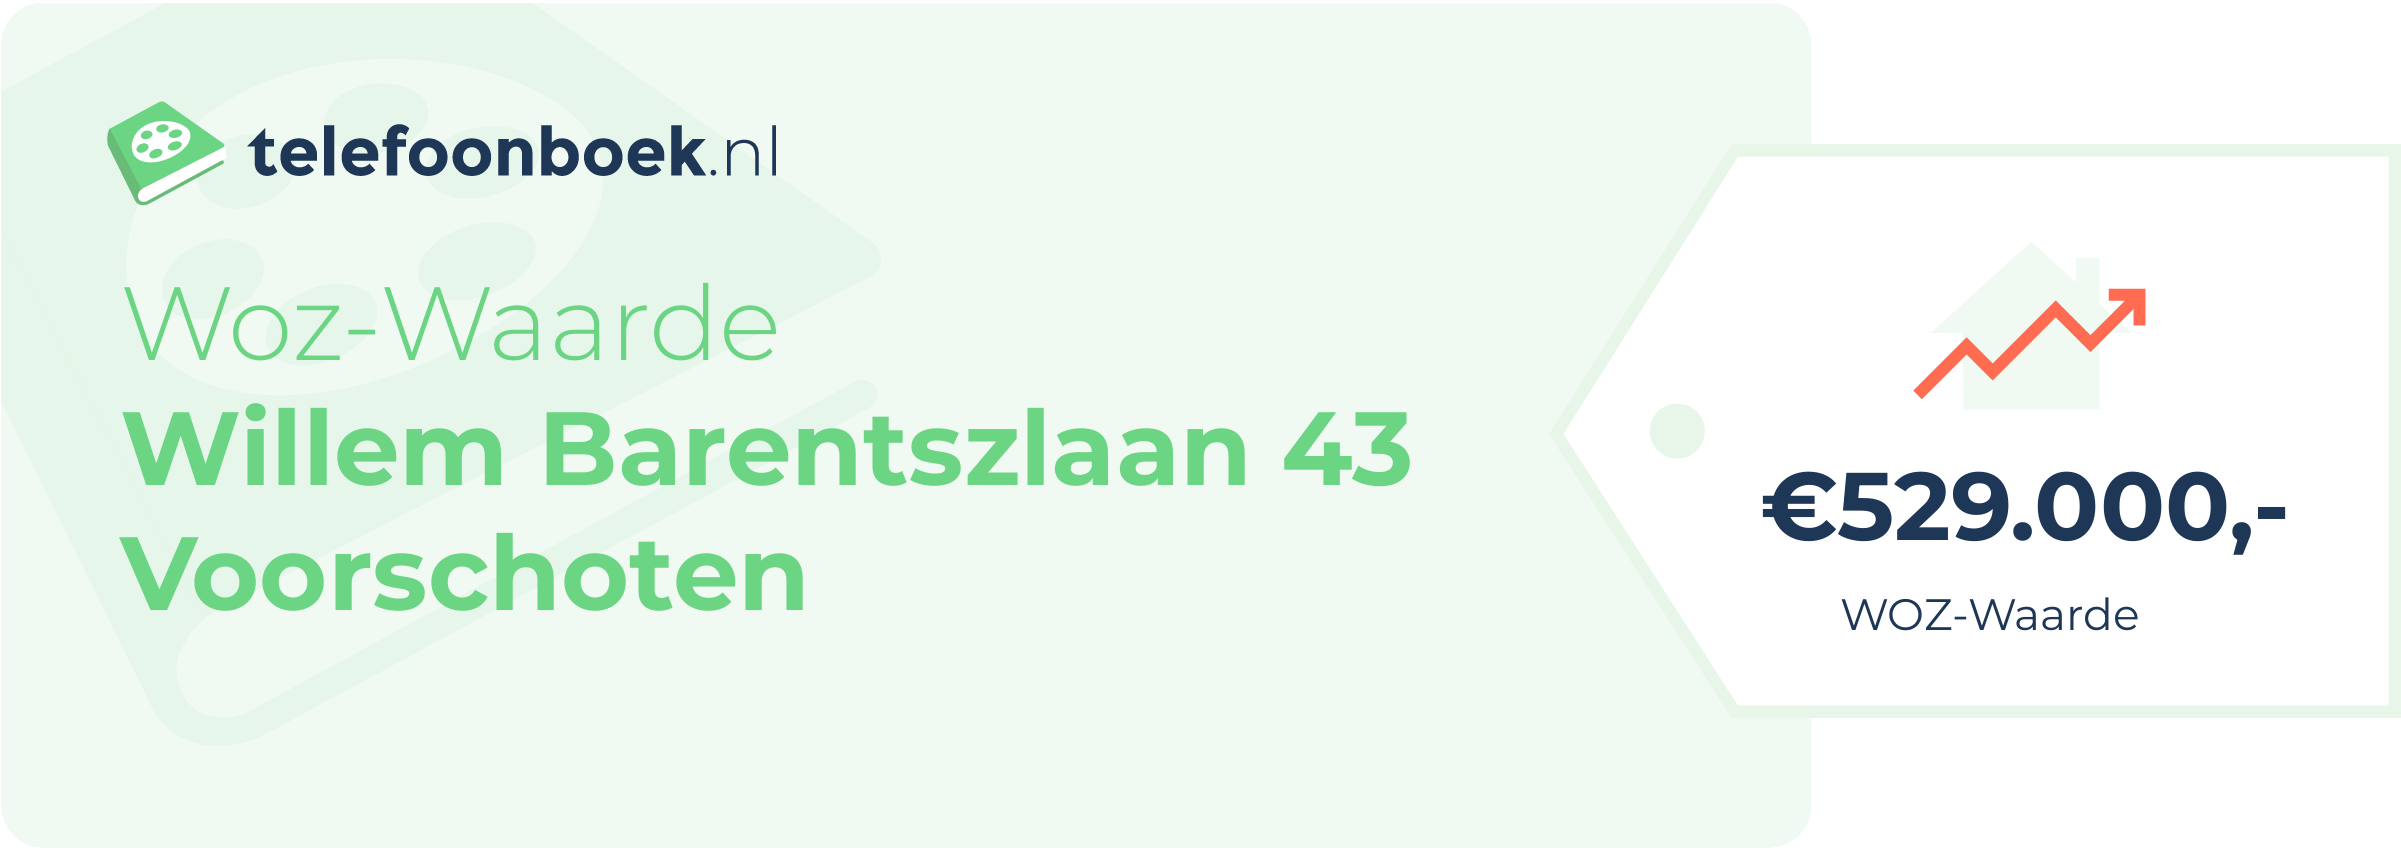 WOZ-waarde Willem Barentszlaan 43 Voorschoten